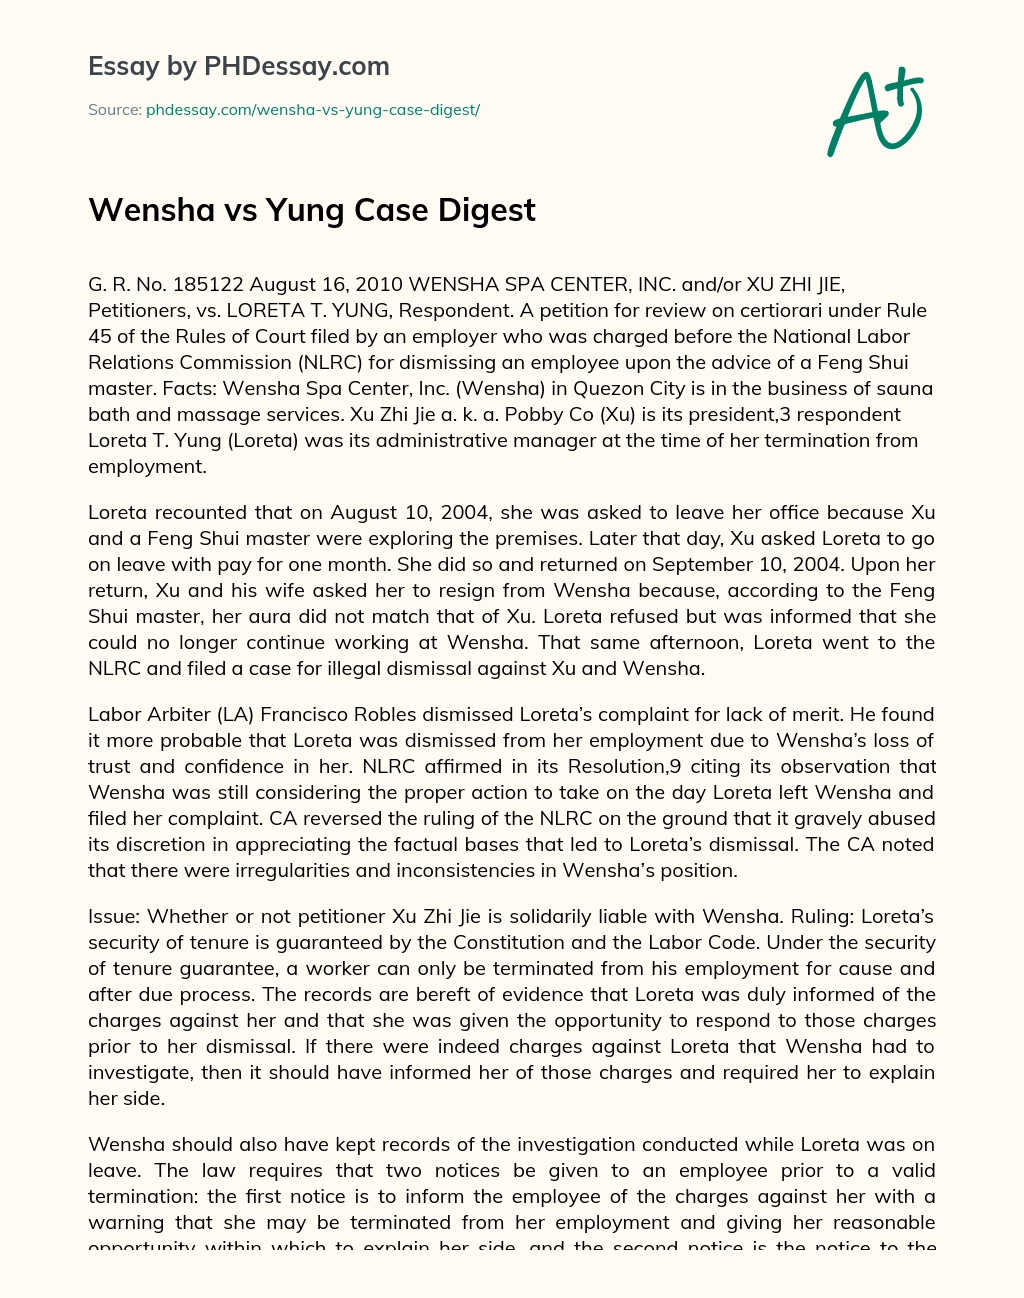 Wensha vs Yung Case Digest essay